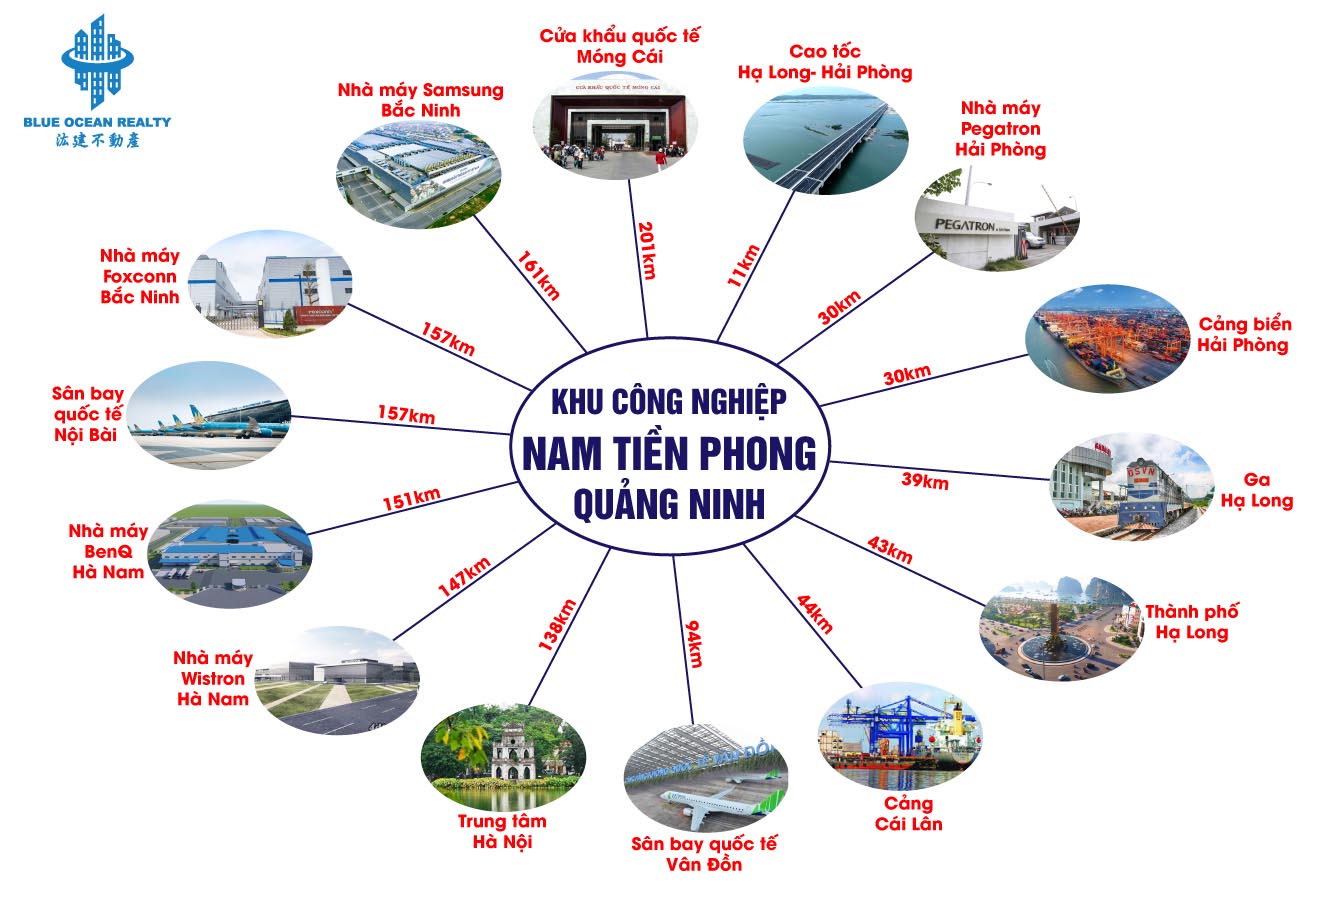 Khu công nghiệp Nam Tiền Phong – Quảng Ninh (Deep C I)